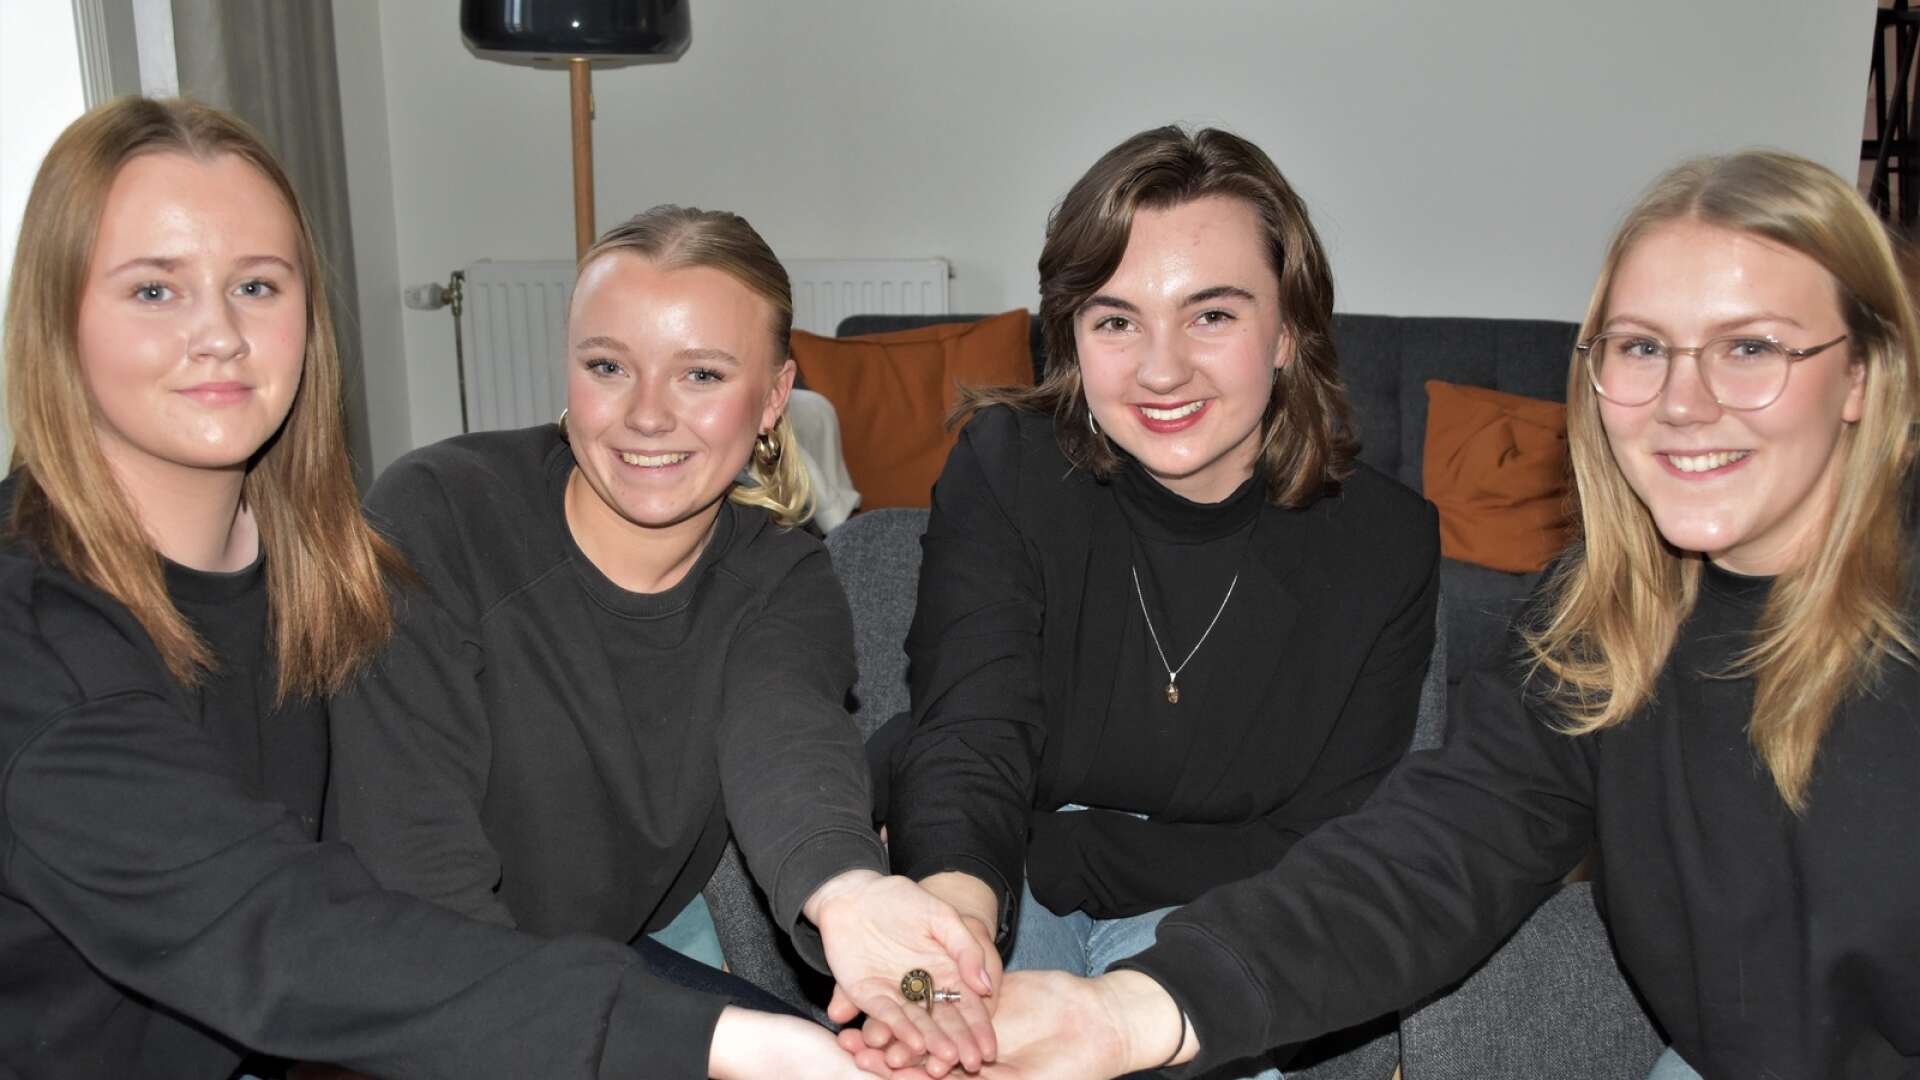 Julia Thoresson, Mina Nävehed, Tania Eriksson och Ida Nävehed,  Easy Pin UF, vann årets omgång av Draknästet